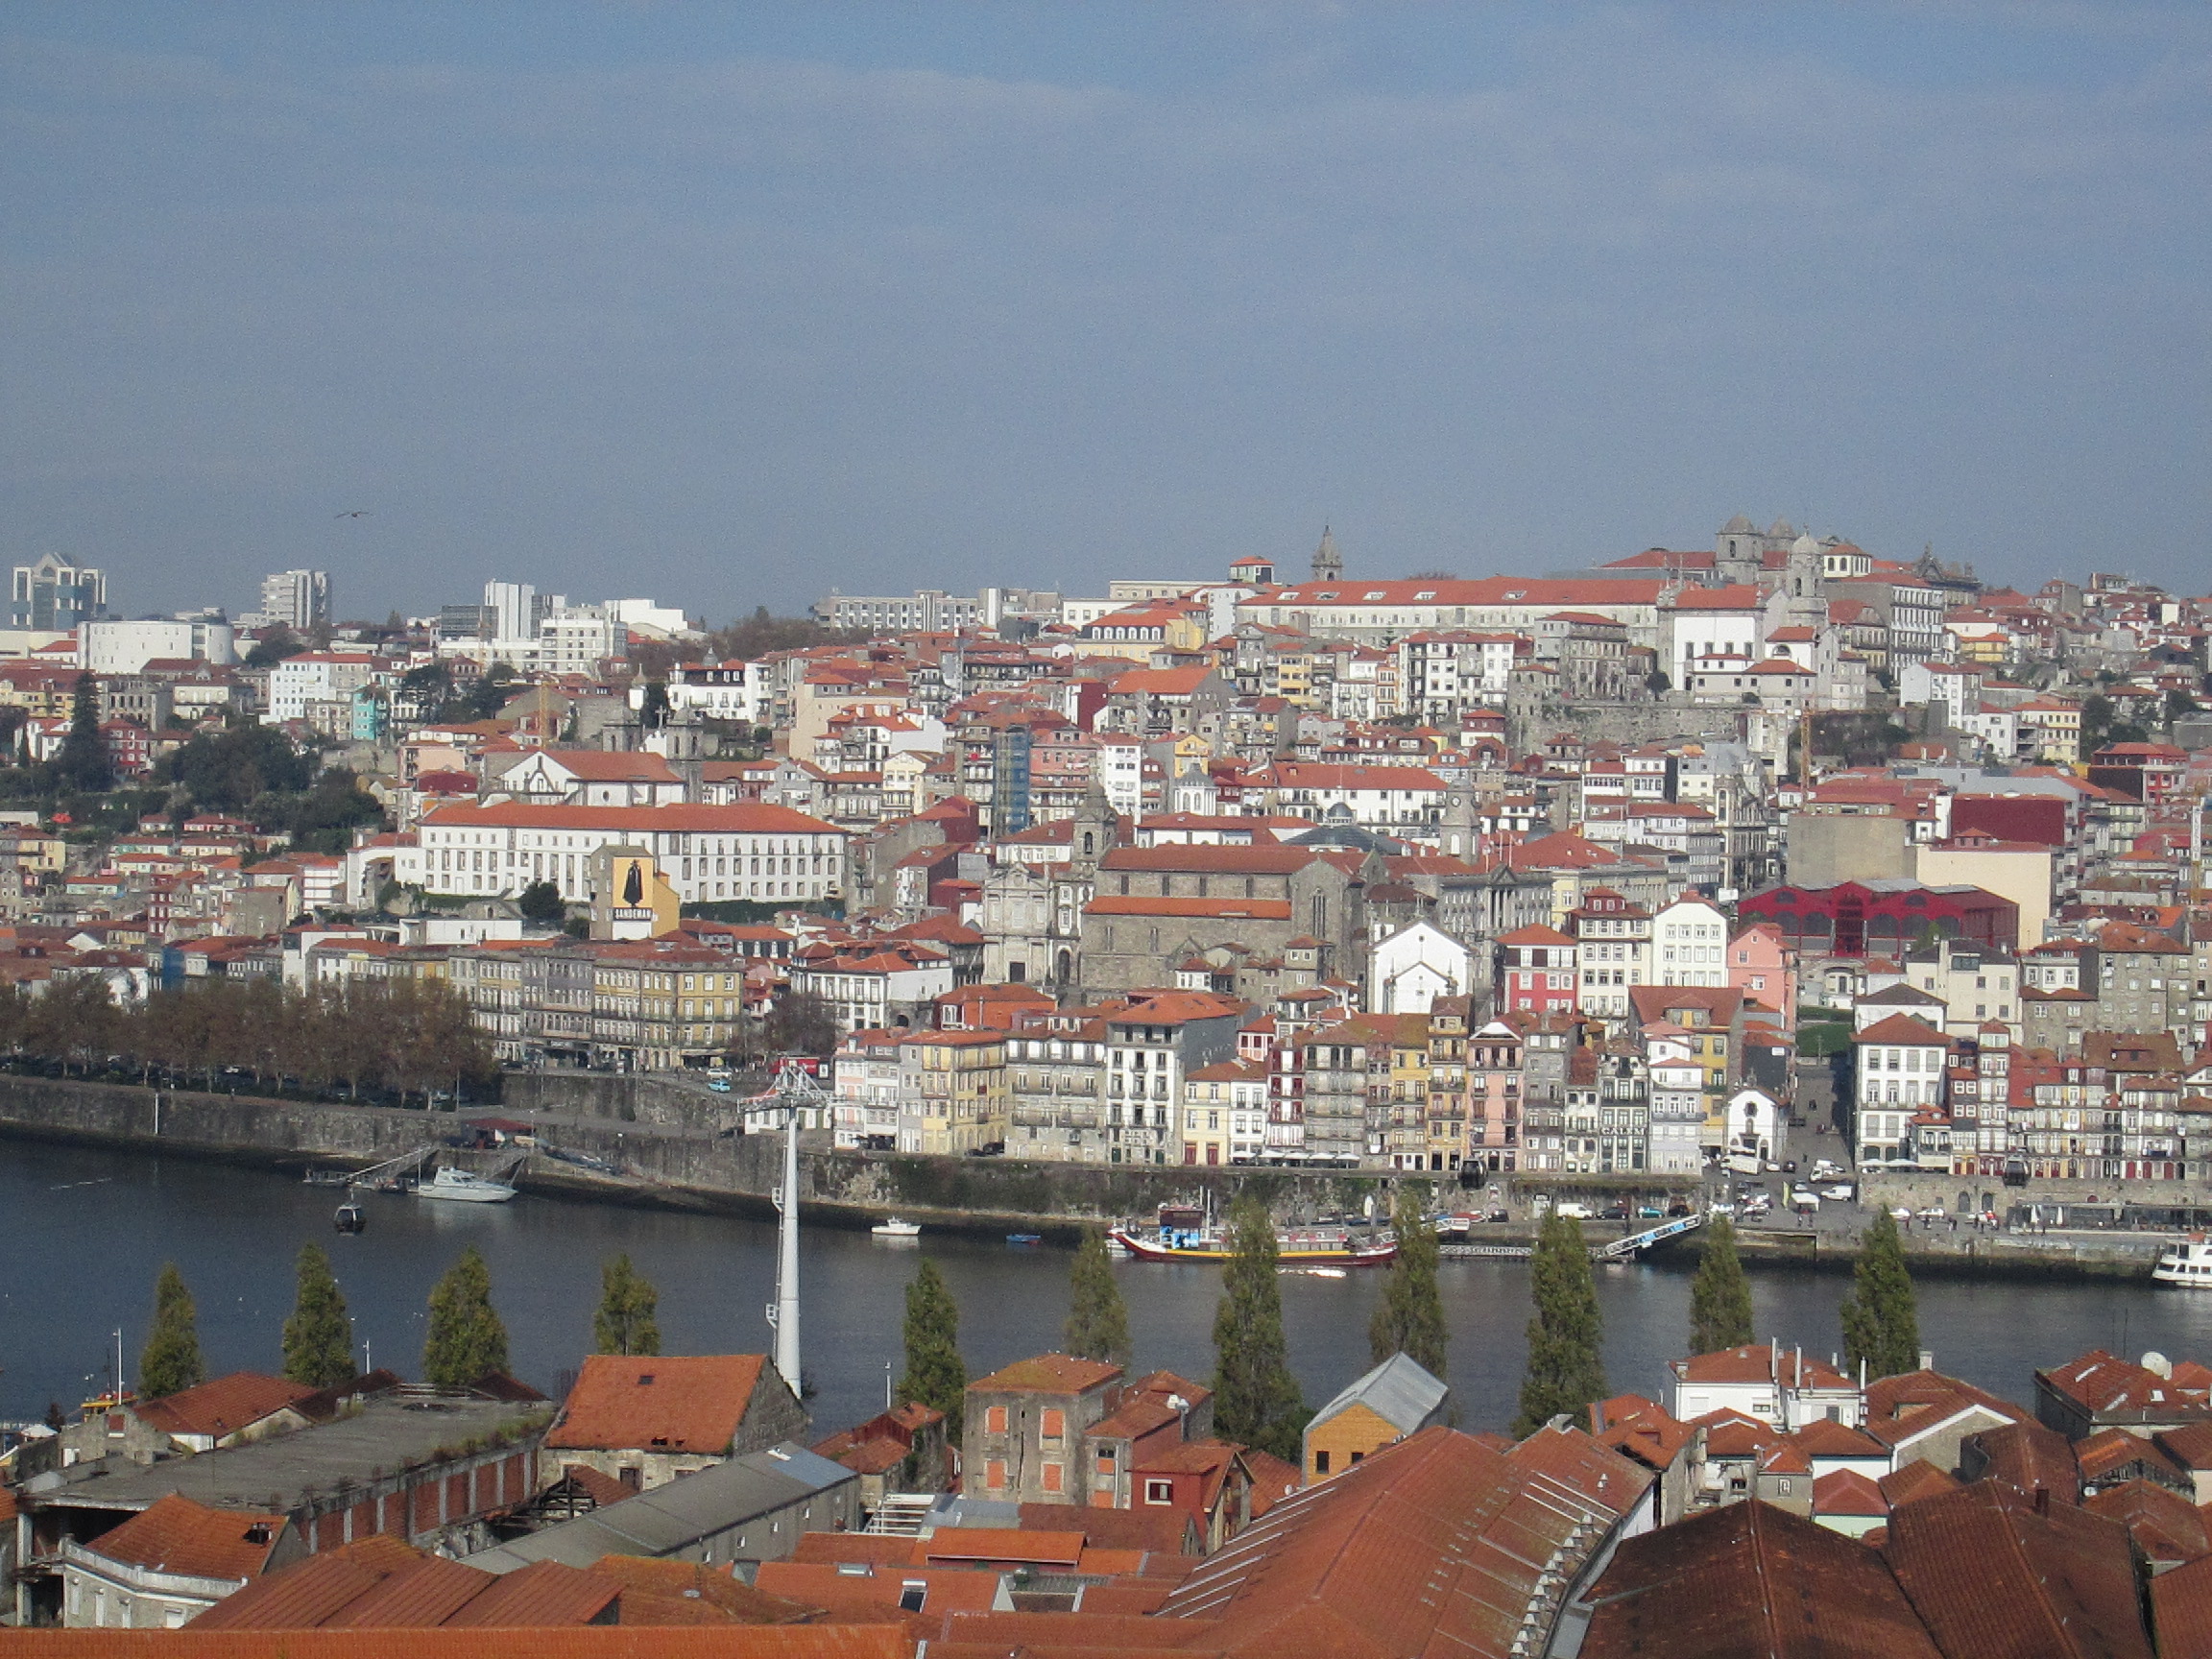 Vue sur le Douro et le centre historique de Porto depuis une chambre duYeatman. Photo MS.